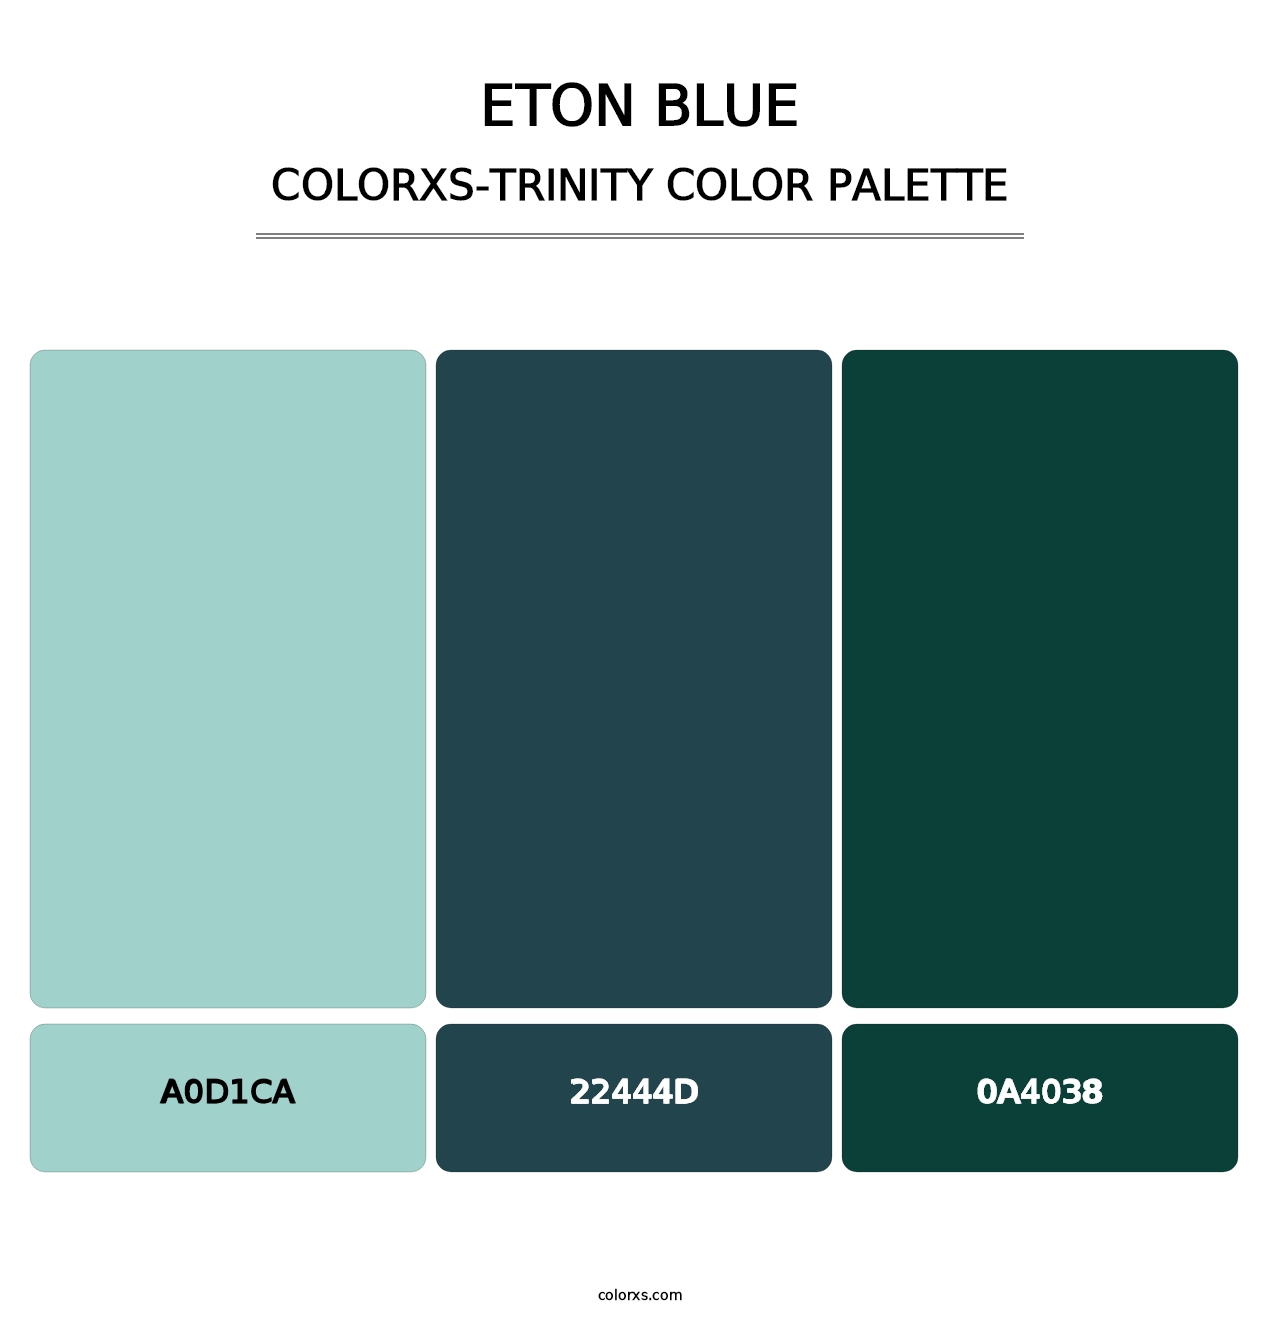 Eton blue - Colorxs Trinity Palette